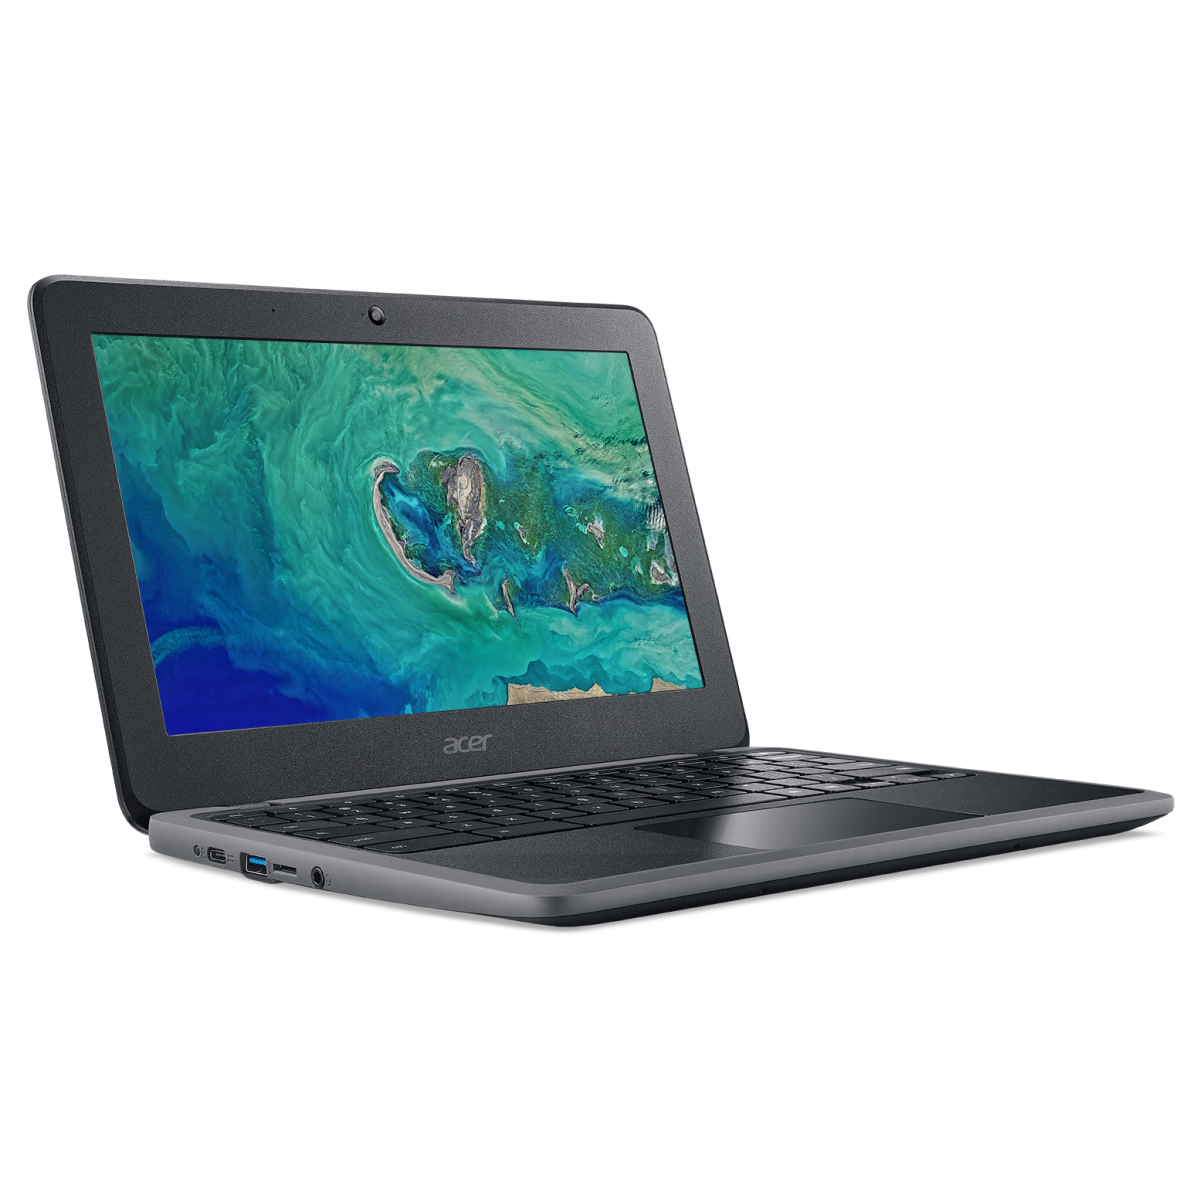 Acer Chromebook 11 - C732 - Celeron N3450/4GB/32GB eMMC - Chrome OS -  School Locker